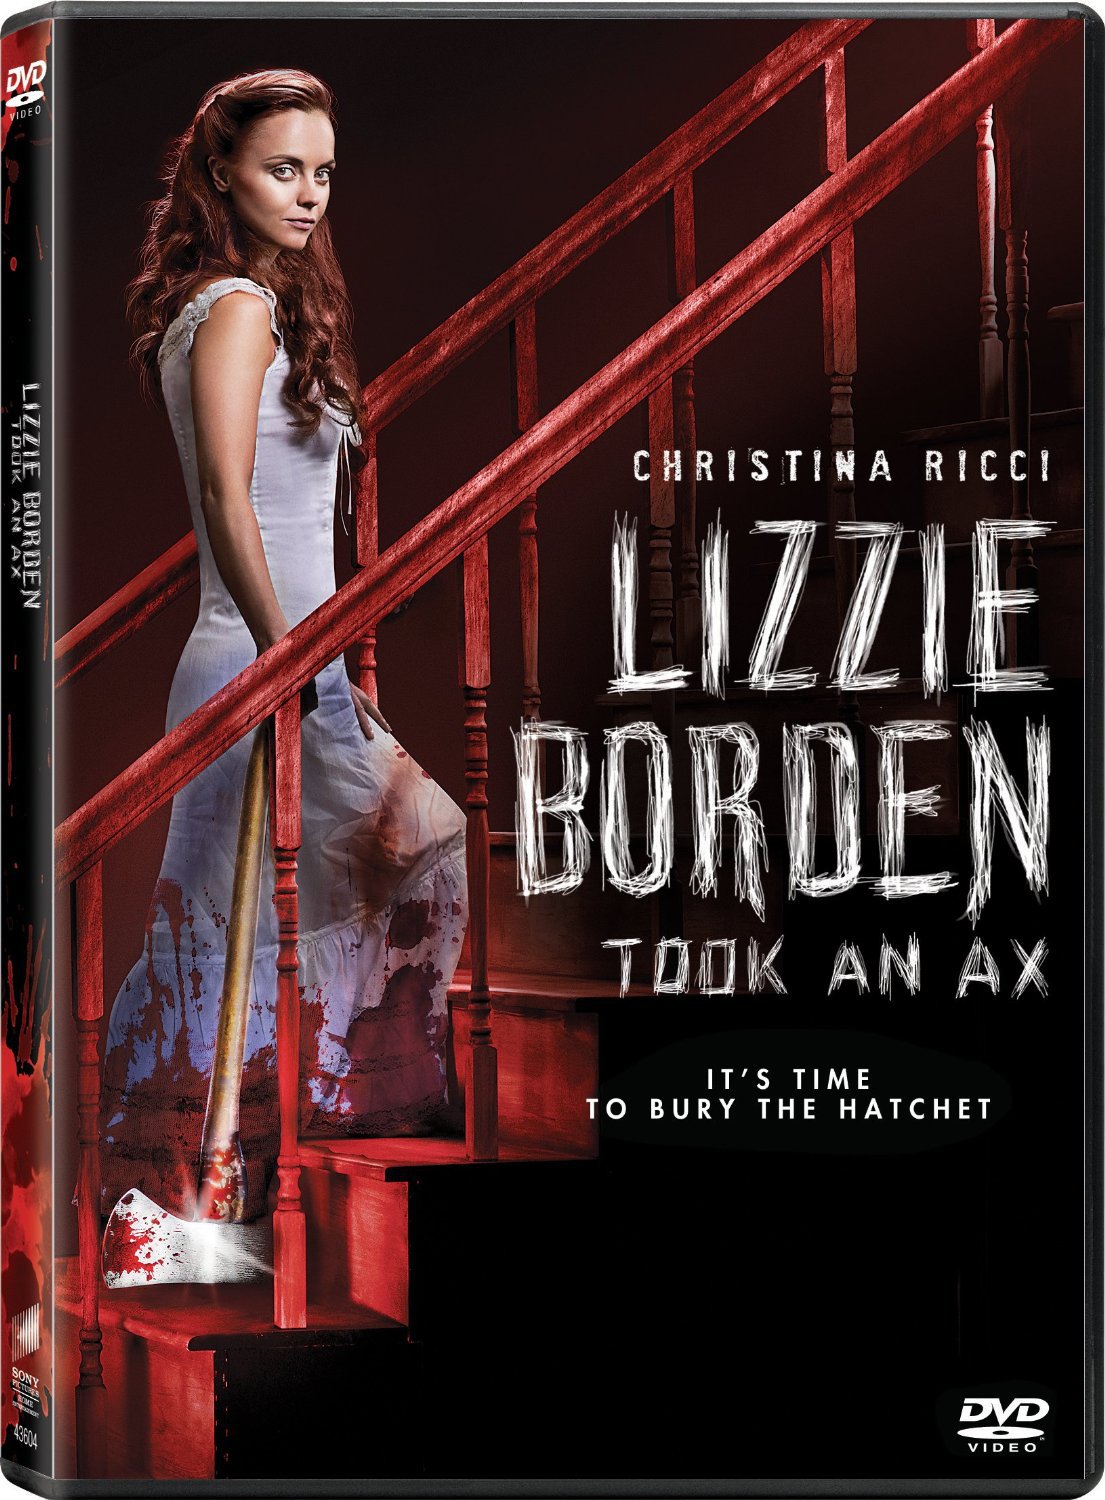 Lizzy Borden Took An Ax